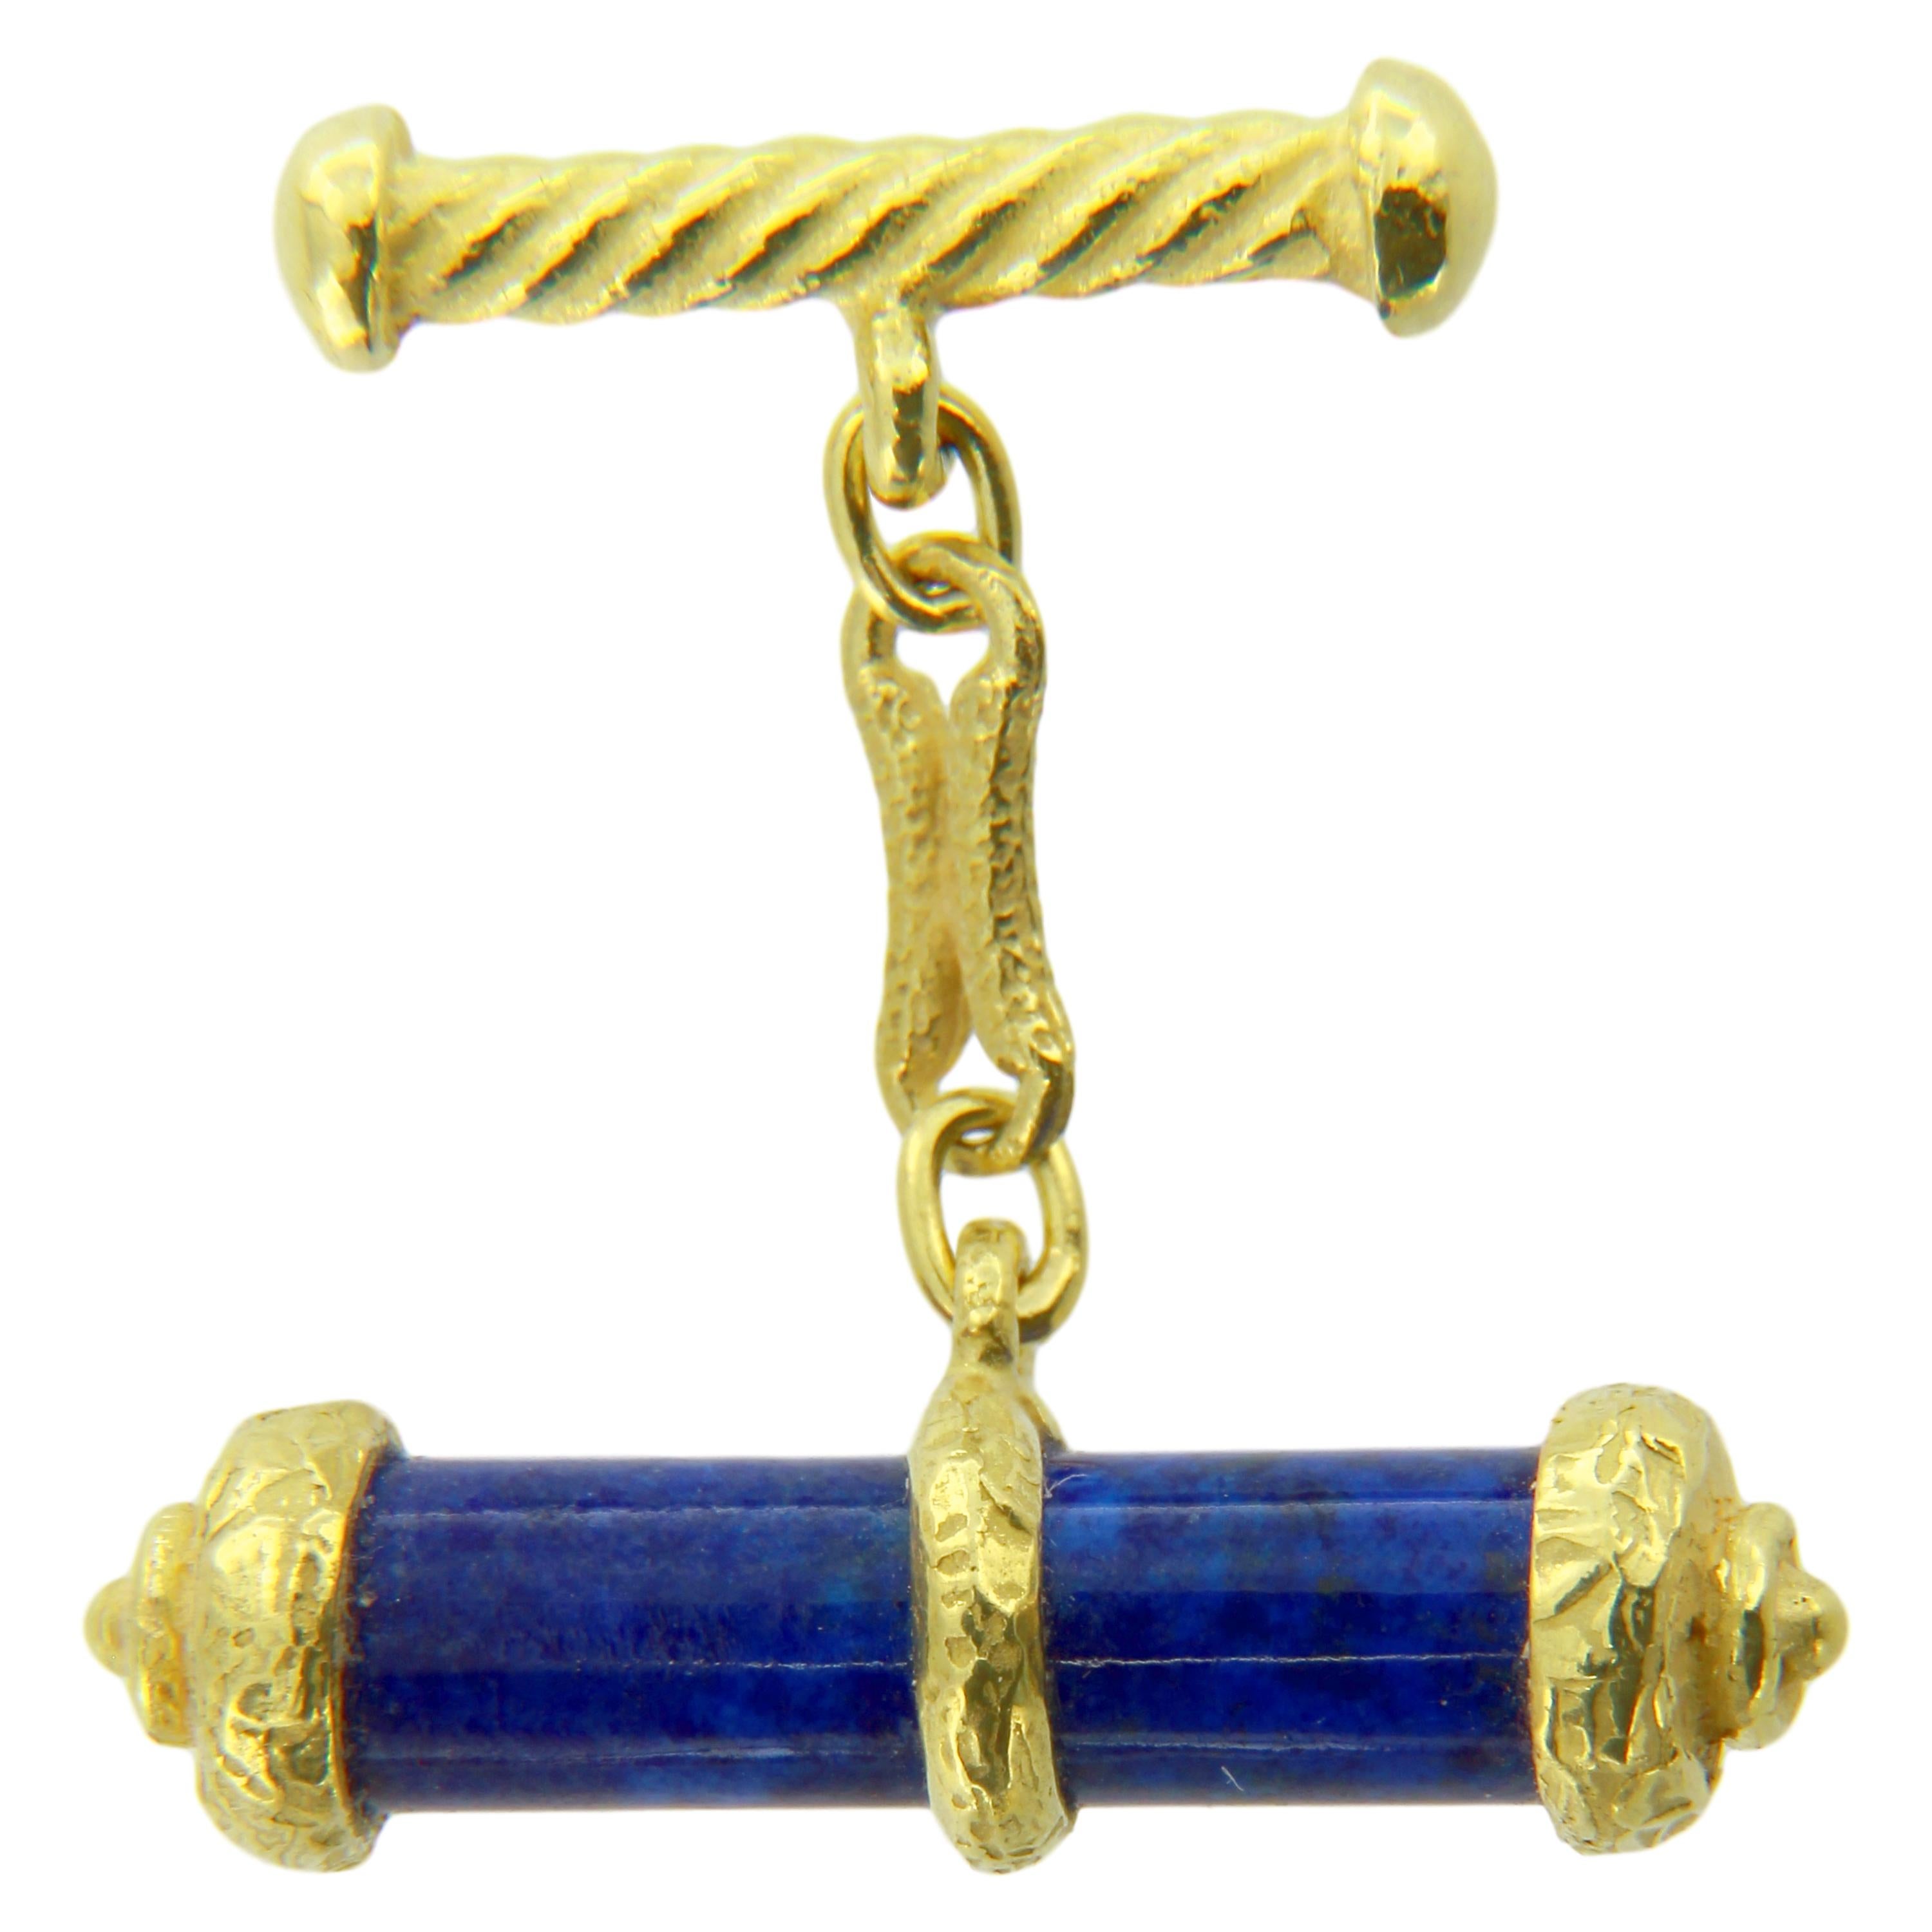 Superbes boutons de manchette en or jaune satiné avec pierre Lapis Lazuli, fabriqués à la main selon la technique du moulage à la cire perdue.

Le moulage à la cire perdue, l'une des plus anciennes techniques de création de bijoux, constitue la base